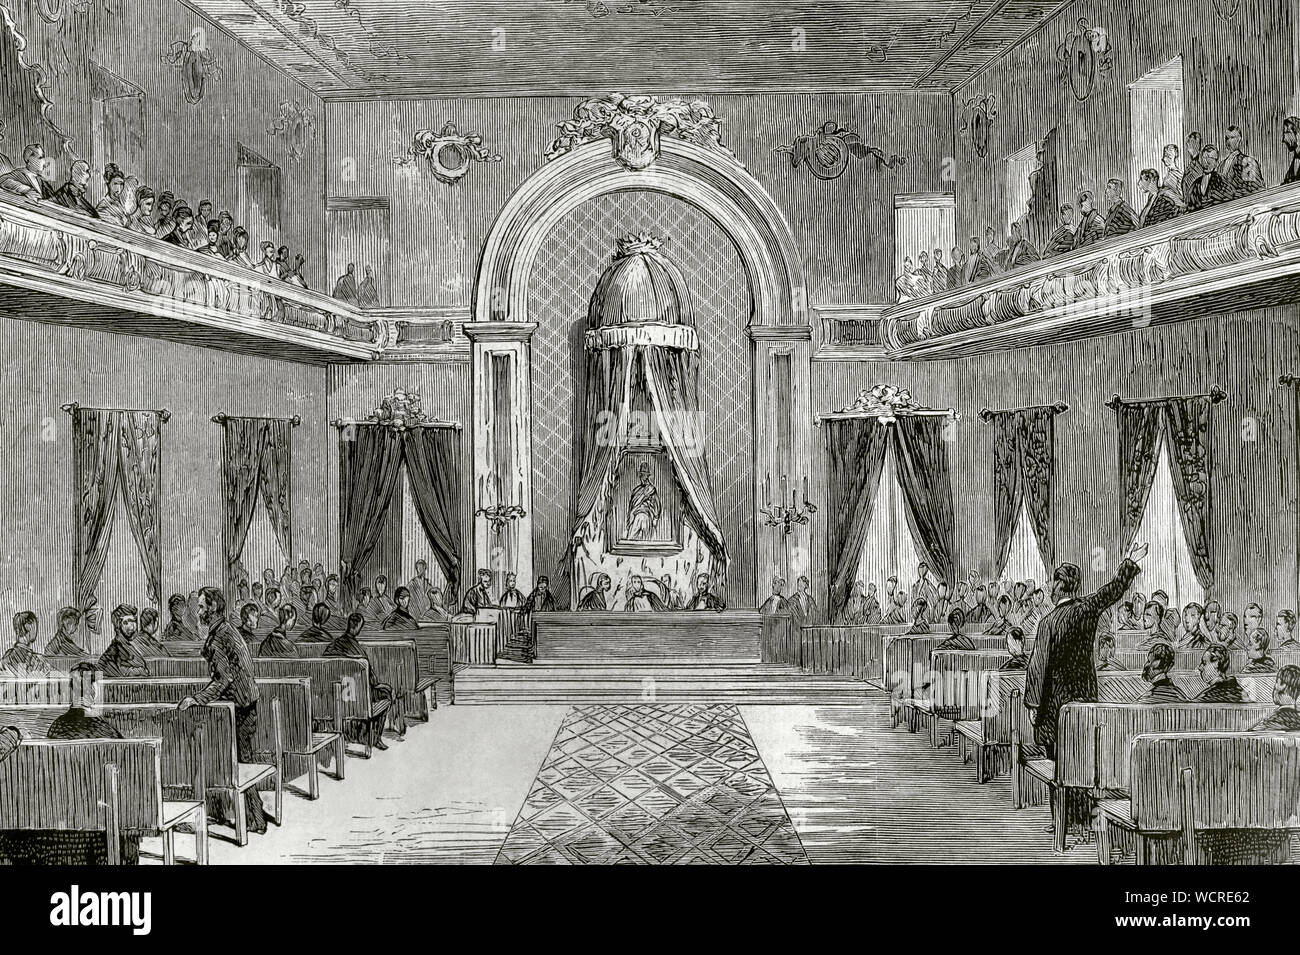 Spanien, Baskenland, Biskaya, Bilbao. Sitzung der Juntas Generales de Vizcaya (Parlament Foral von Biskaya). Sitzungen abgehalten wurden, zum ersten Mal in der Aula des Instituts in Bilbao. Das Gesetz wurde unter Vorsitz von einem Porträt von König Alfonso XII. Die letzte Sitzung fand am Abend des 7. Oktober 1876 statt. Zuvor diese Sitzungen abgehalten wurden, je nach Zuständigkeit, im Baum der Guernica (Gernika). Am Ende der Karlistenkriege in 1876, die Juntas Generales wurden zusammen mit dem Rest der chartered Regime abgeschafft. Gravur. La Ilustracion Española y Americana, 22. Oktober, 18. Stockfoto